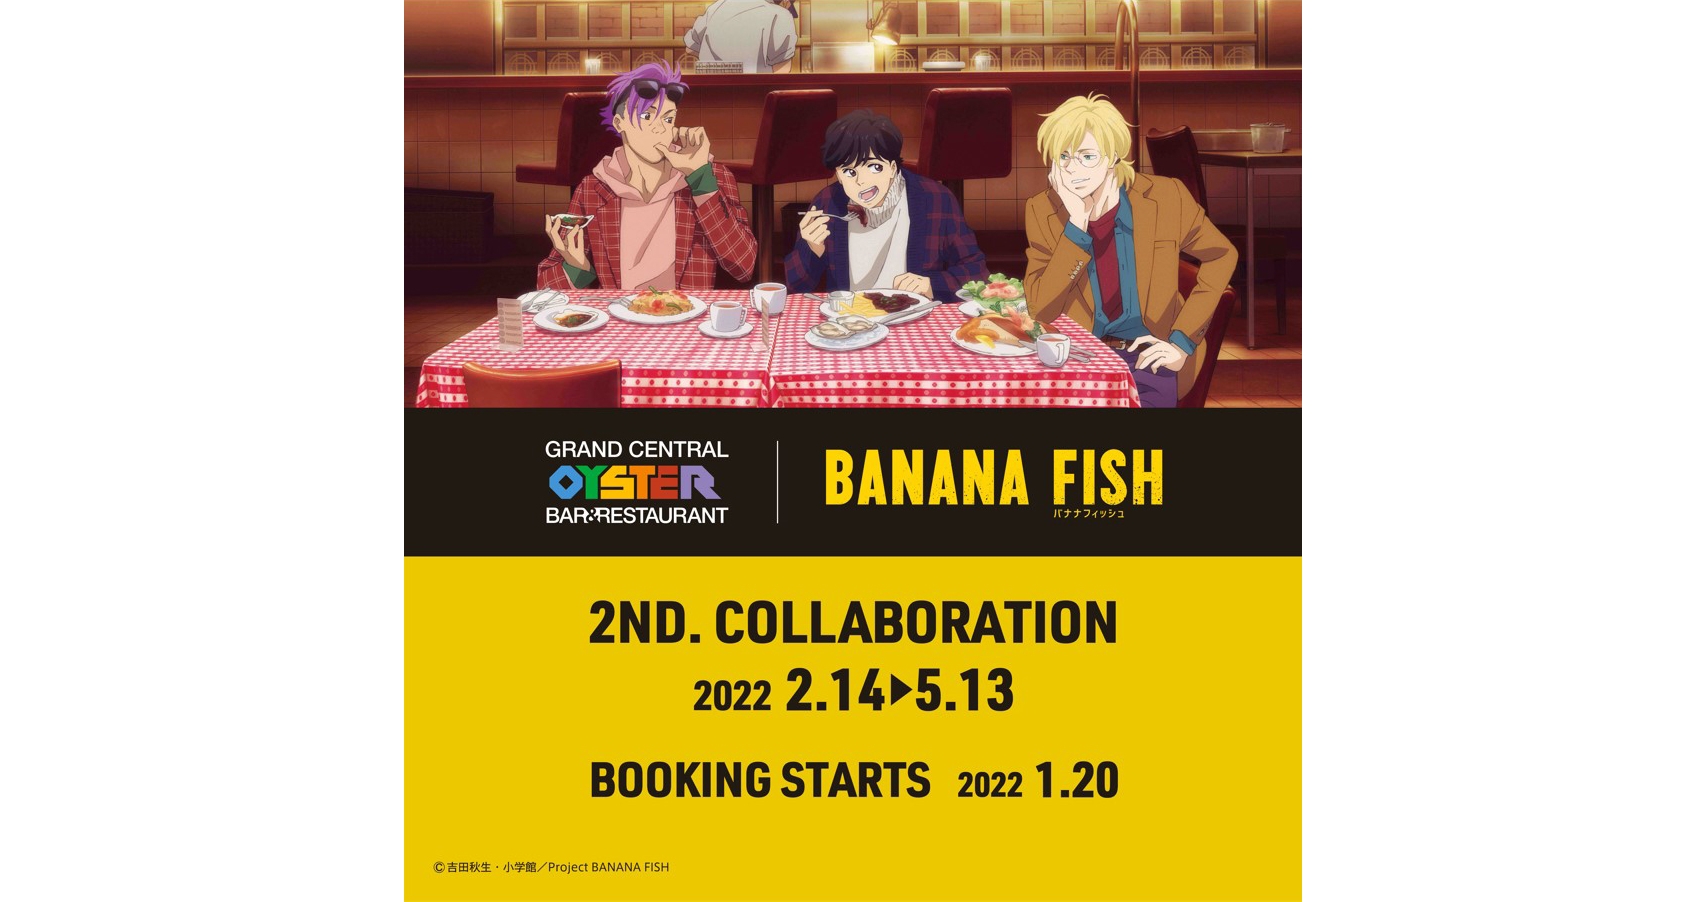 「グランド・セントラル・オイスター・バー＆レストラン」品川店×TVアニメ「BANANA FISH」コラボ第2弾登場1